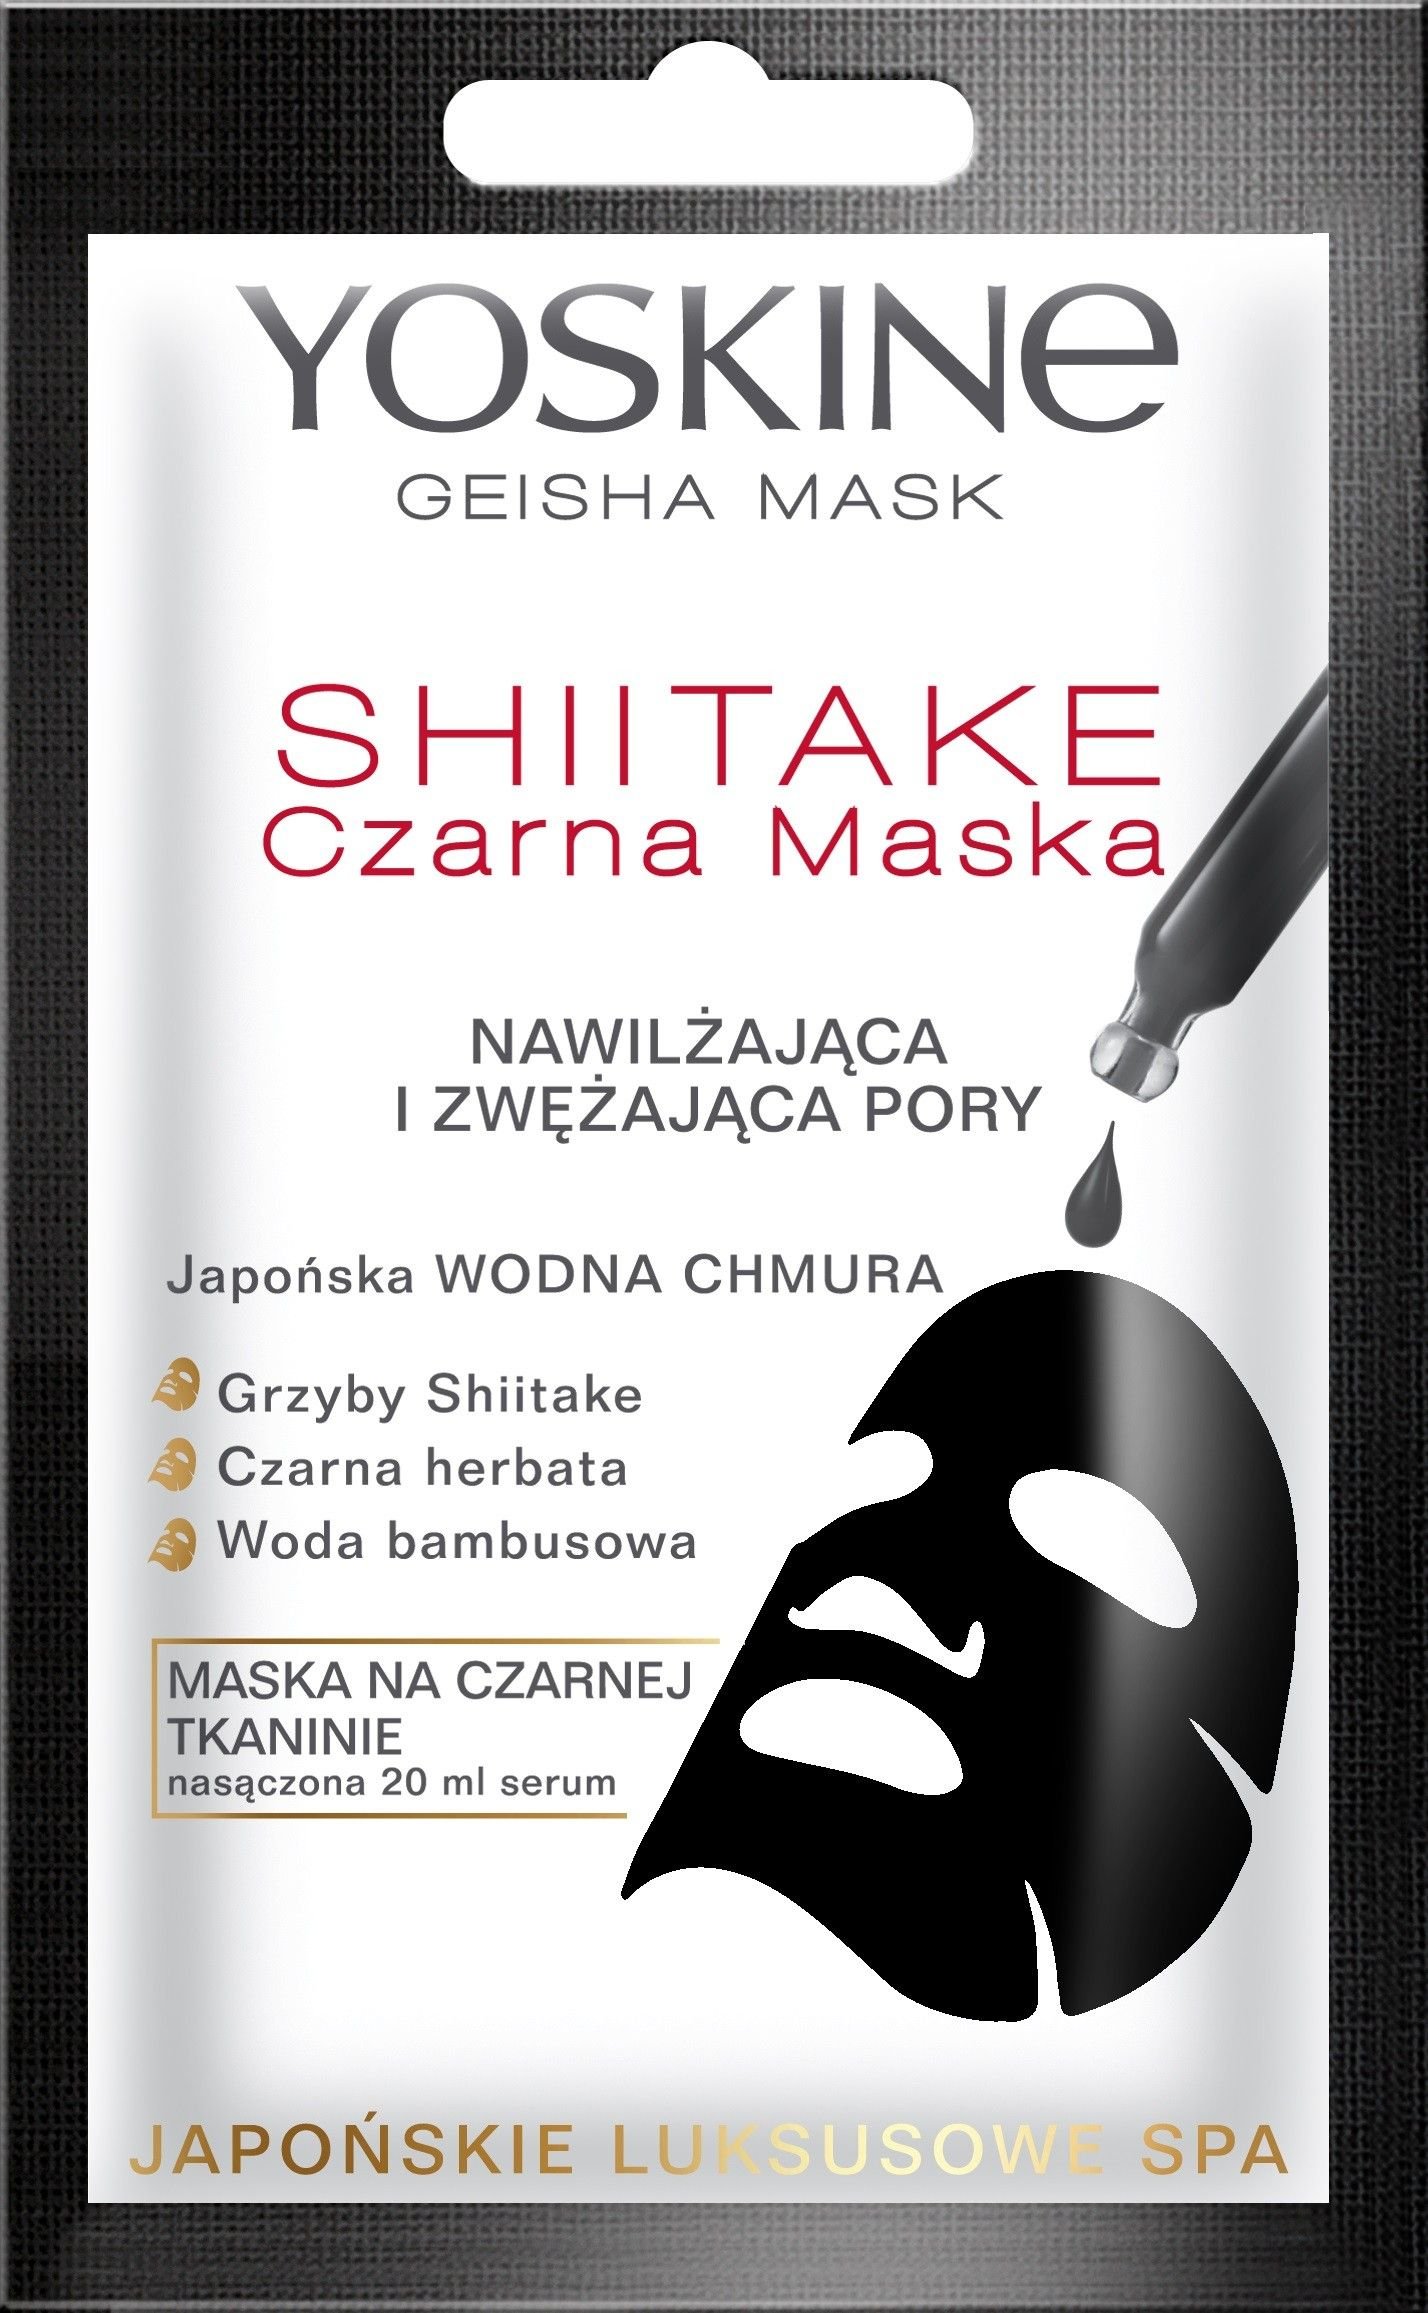 Yoskine Maseczka do twarzy Geisha Mask Shiitake Czarna Maska nawilzajaca 20ml 70747 (5900525060747)